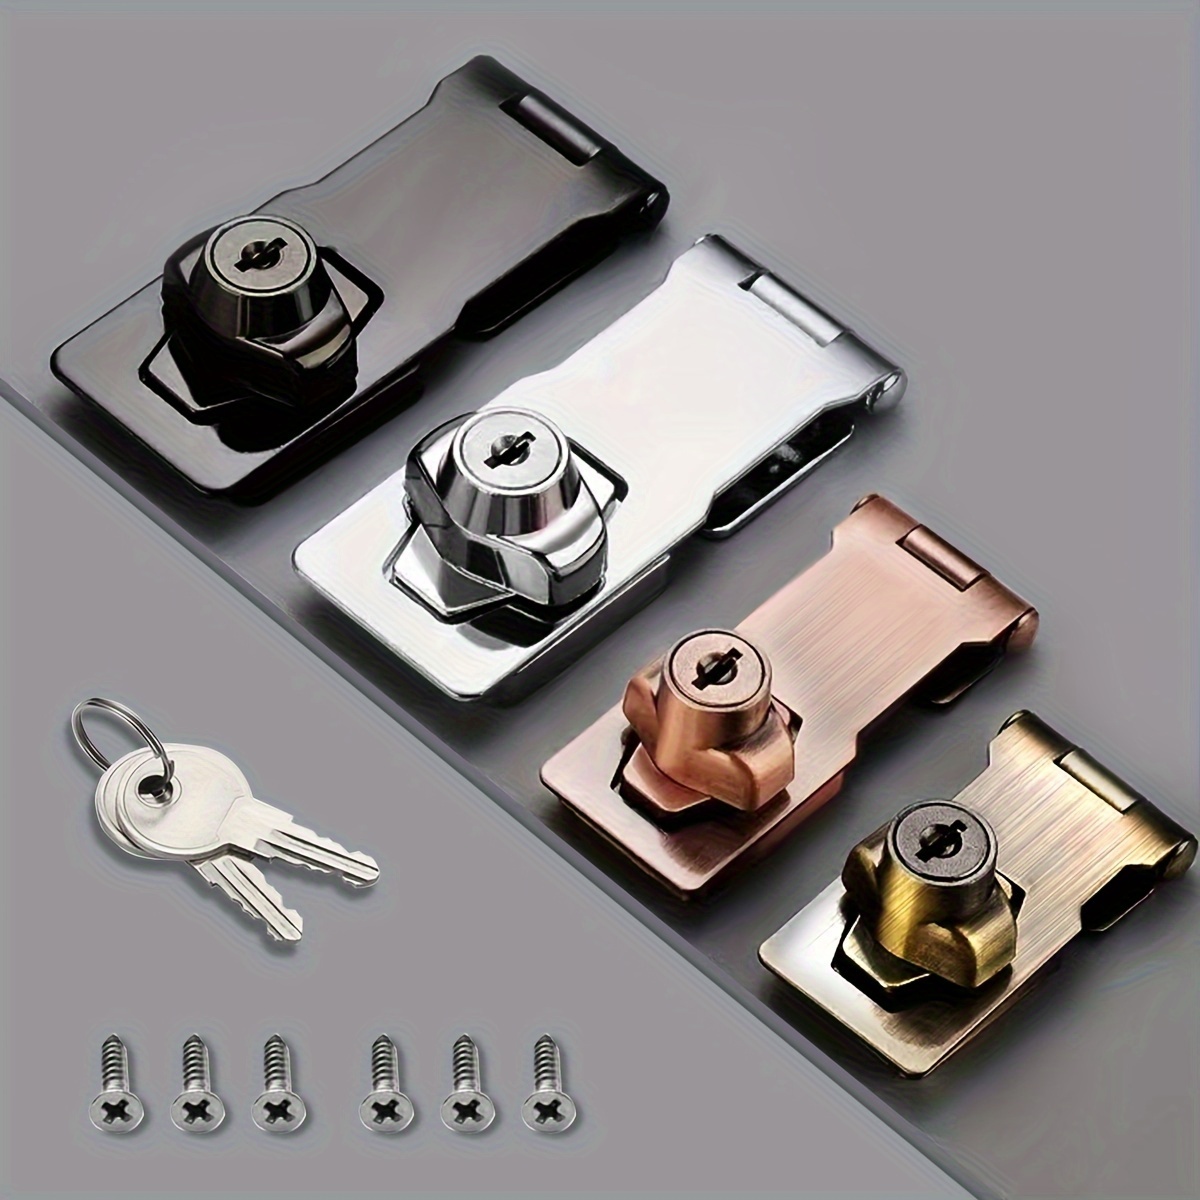 Paquete de 2 cerrojos con llave, cerrojo de bloqueo de puerta de 2.5  pulgadas con llave, perilla giratoria de aleación de zinc para cajones,  buzón y